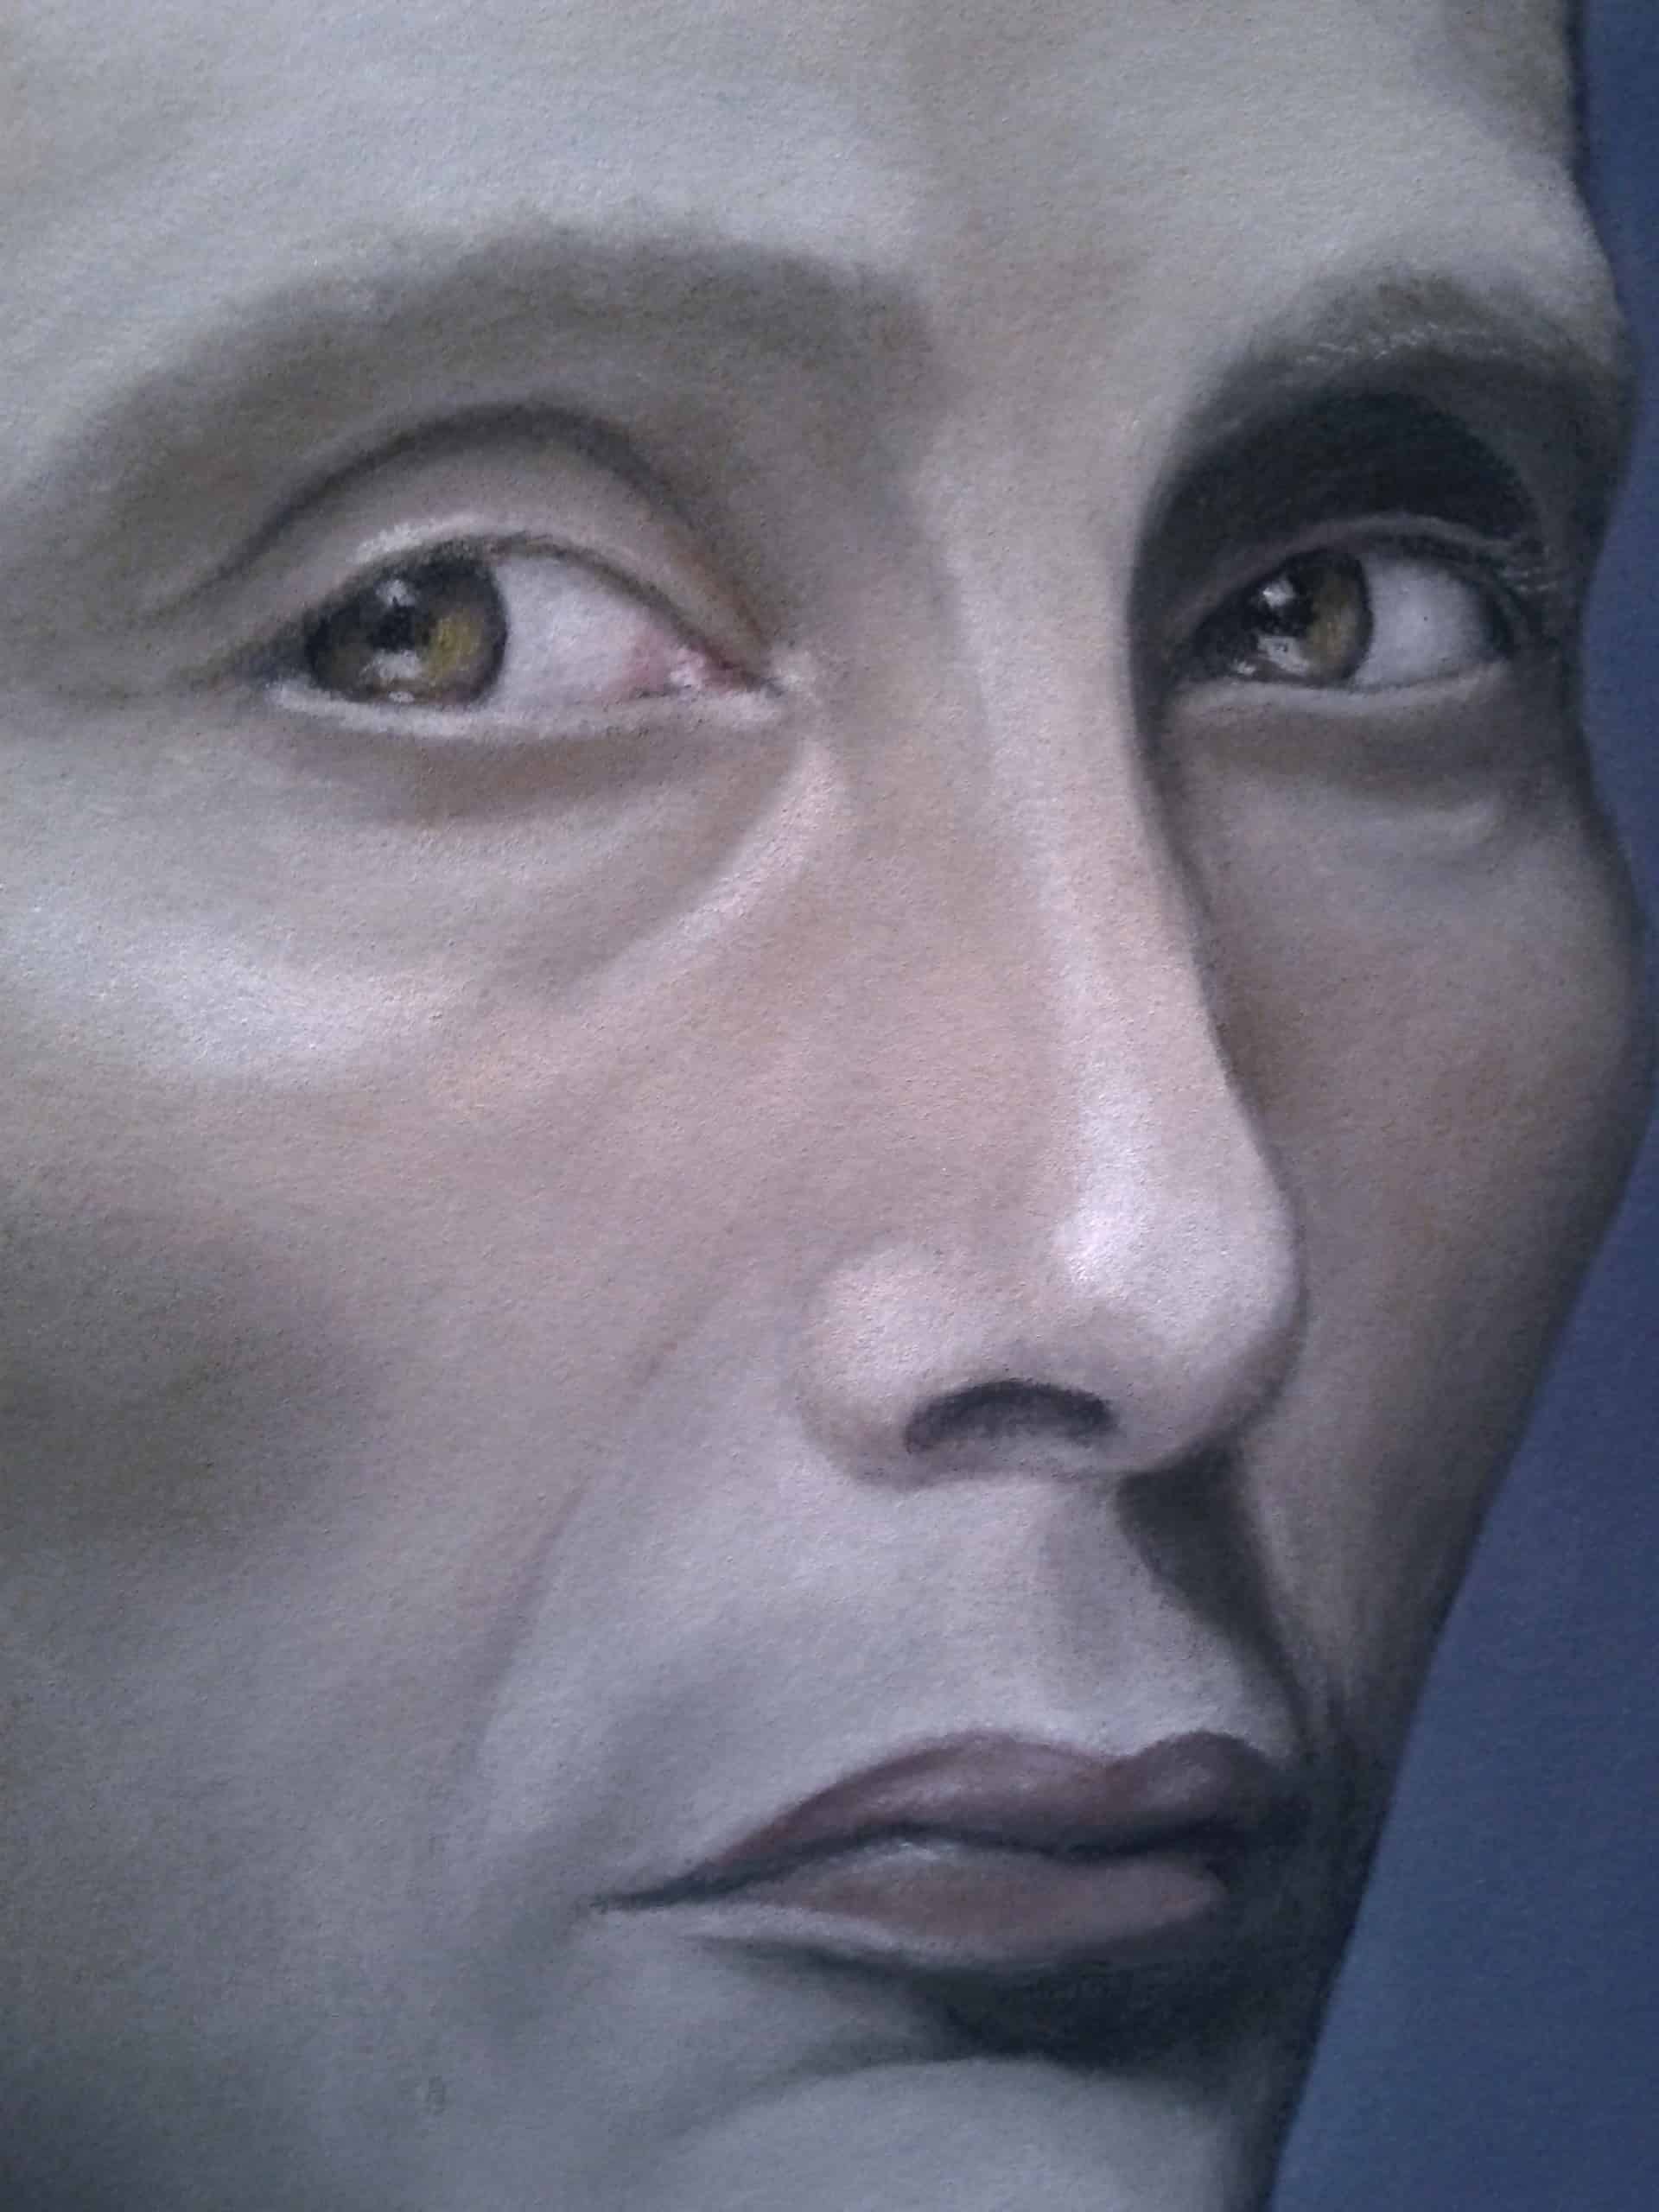 Hannibal portrait (face close-up)